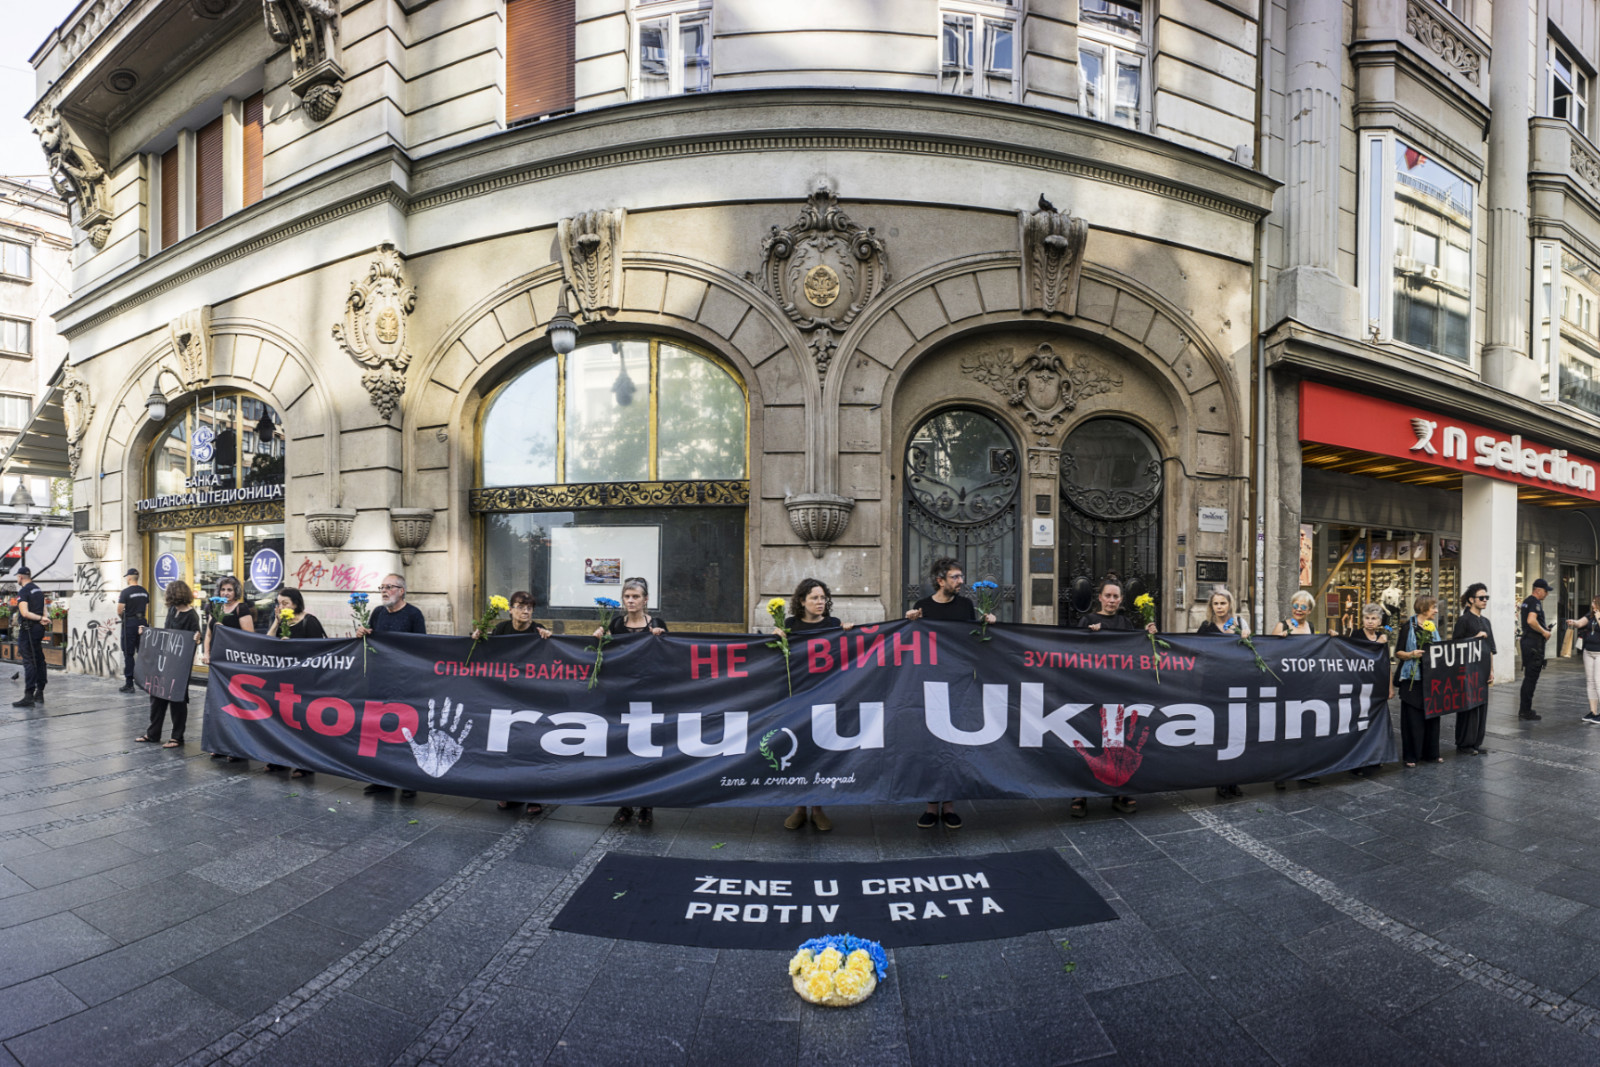 Stop ratu u Ukrajini!